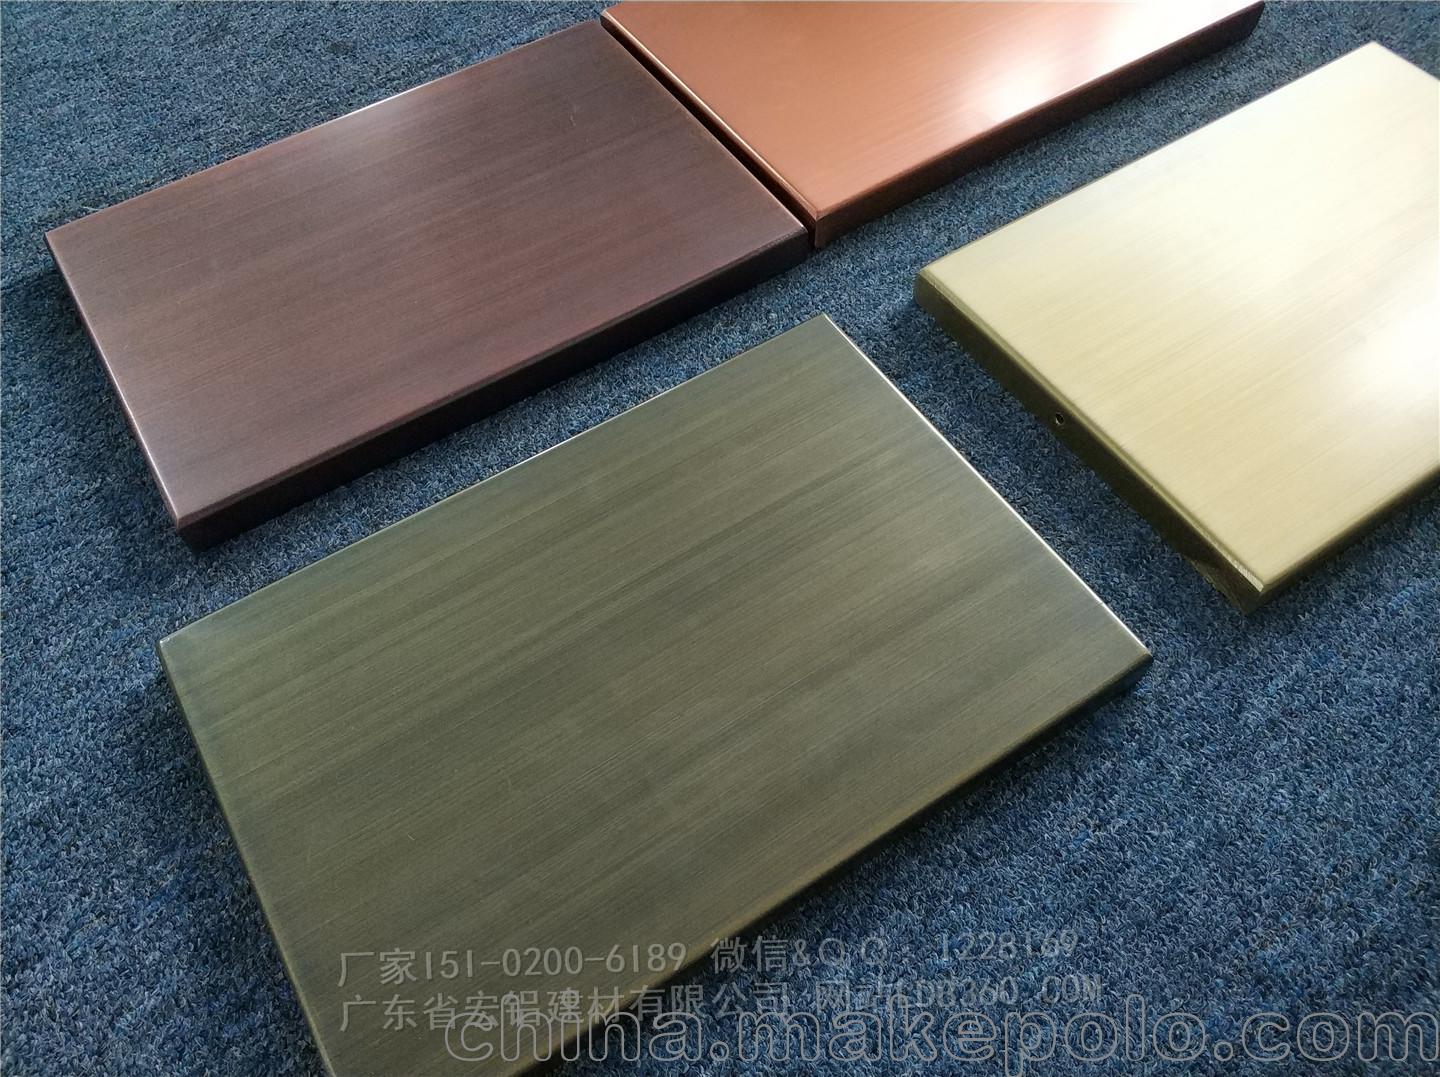 古铜色拉丝铝单板幕板材料